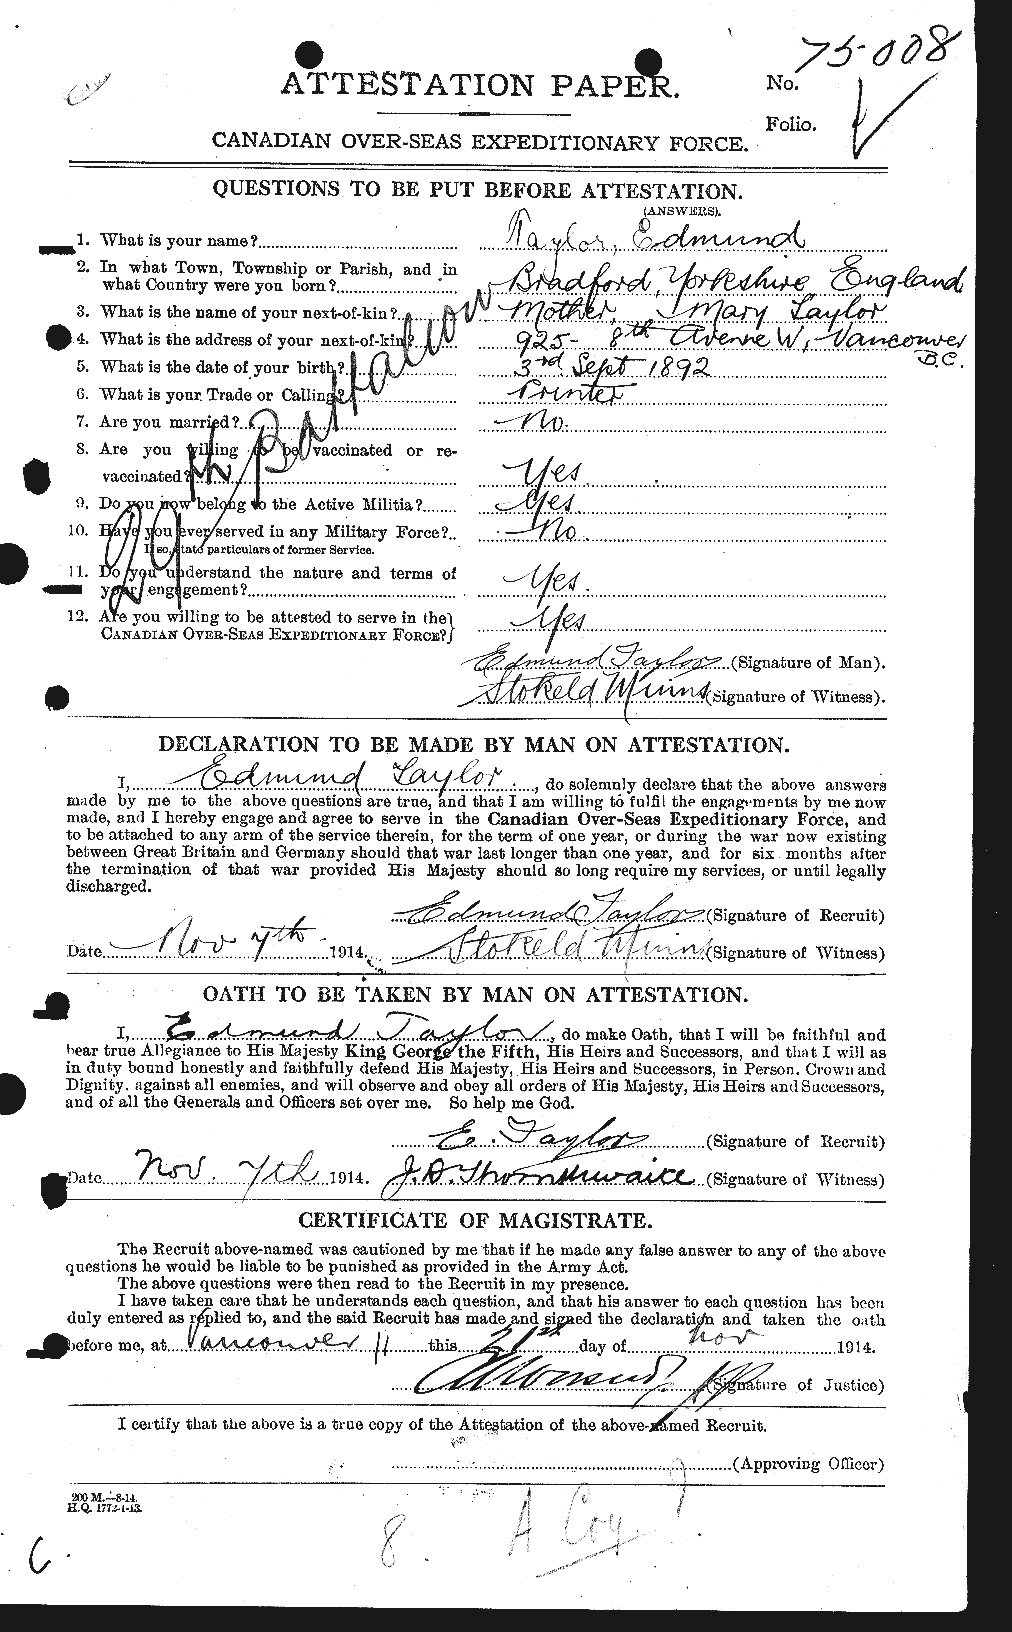 Dossiers du Personnel de la Première Guerre mondiale - CEC 627276a